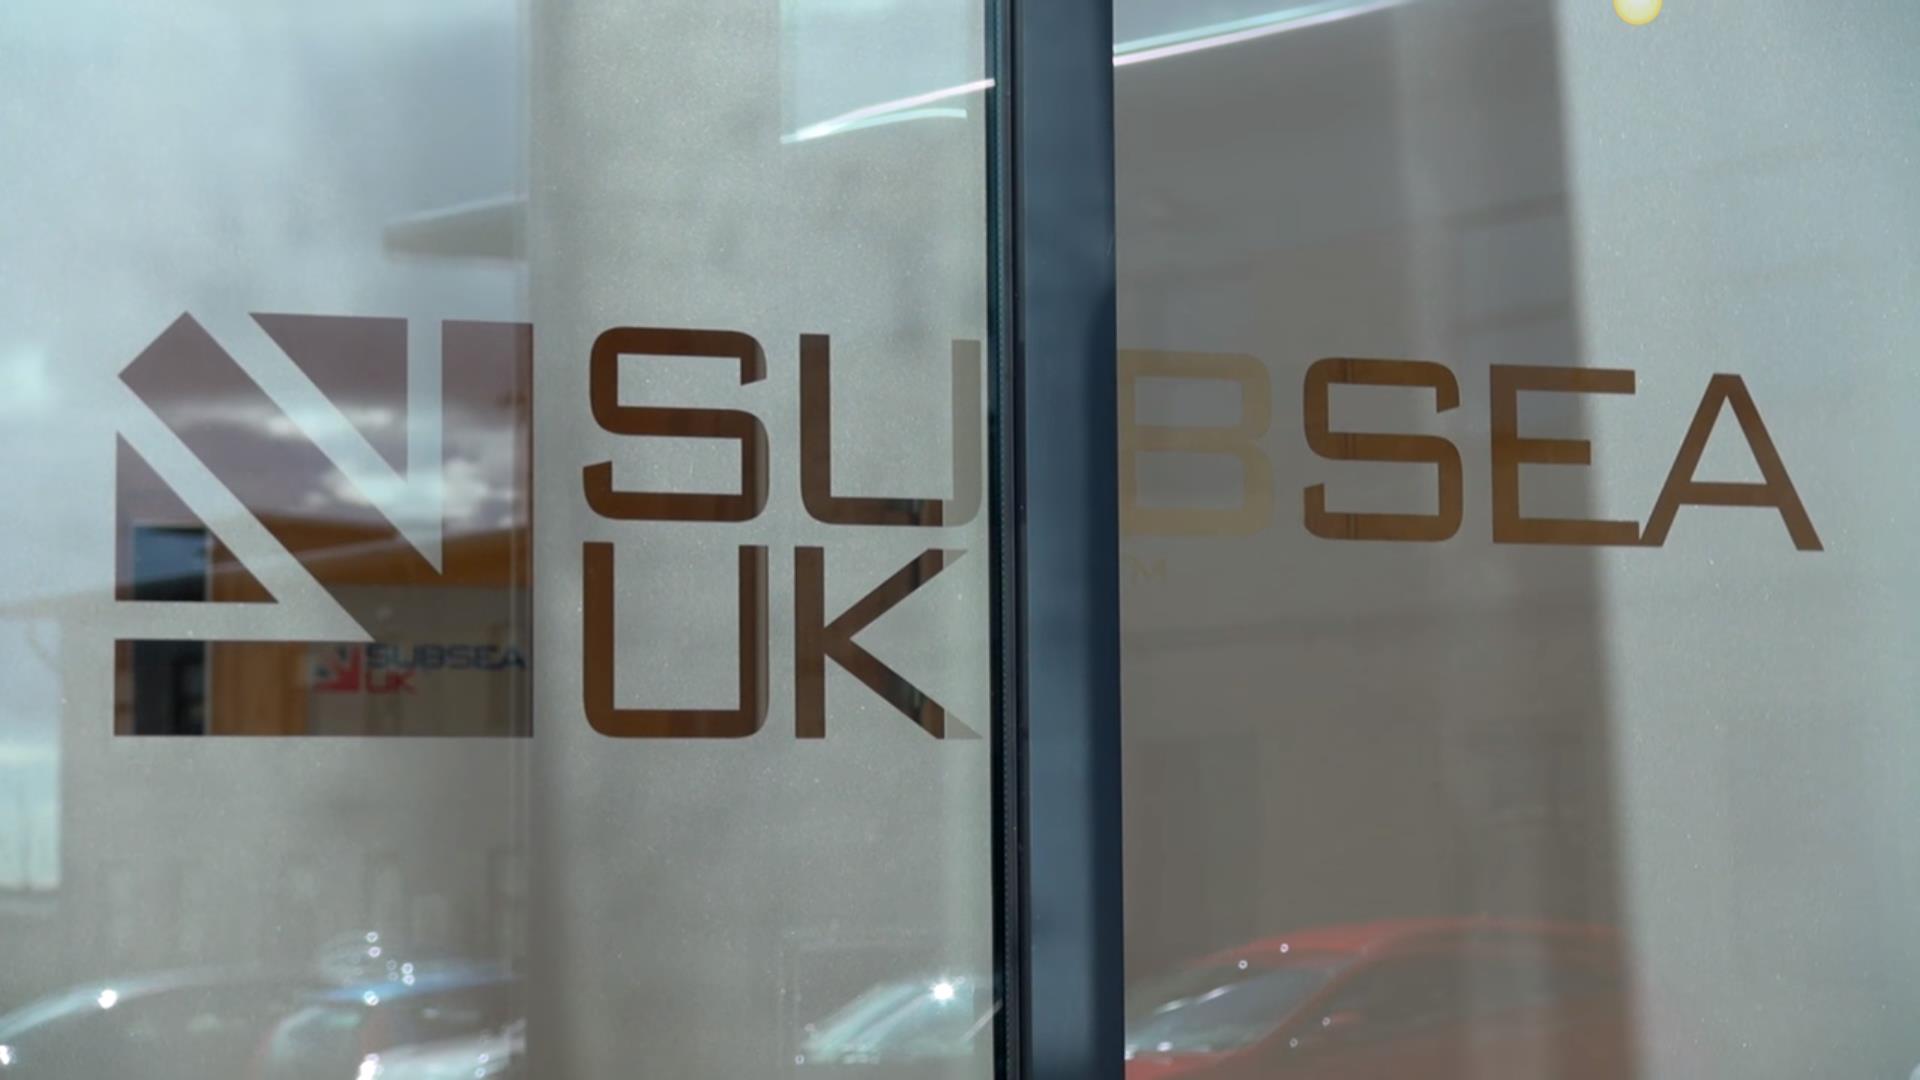 Subsea UK office